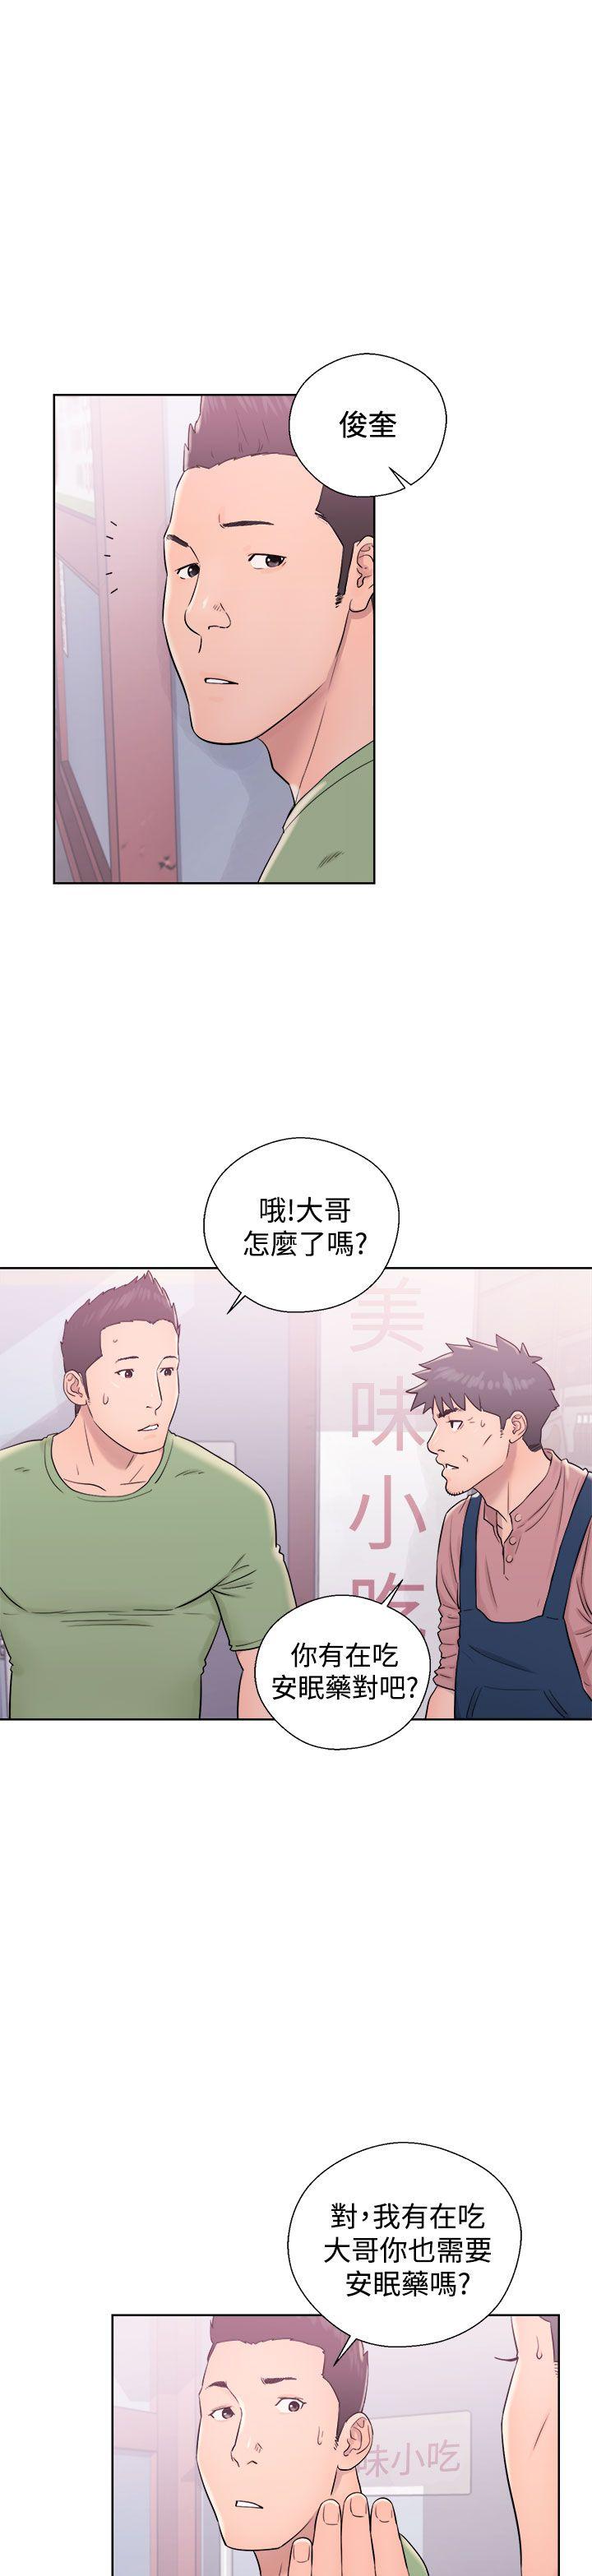 韩国污漫画 青春:逆齡小鮮肉 第9话 29